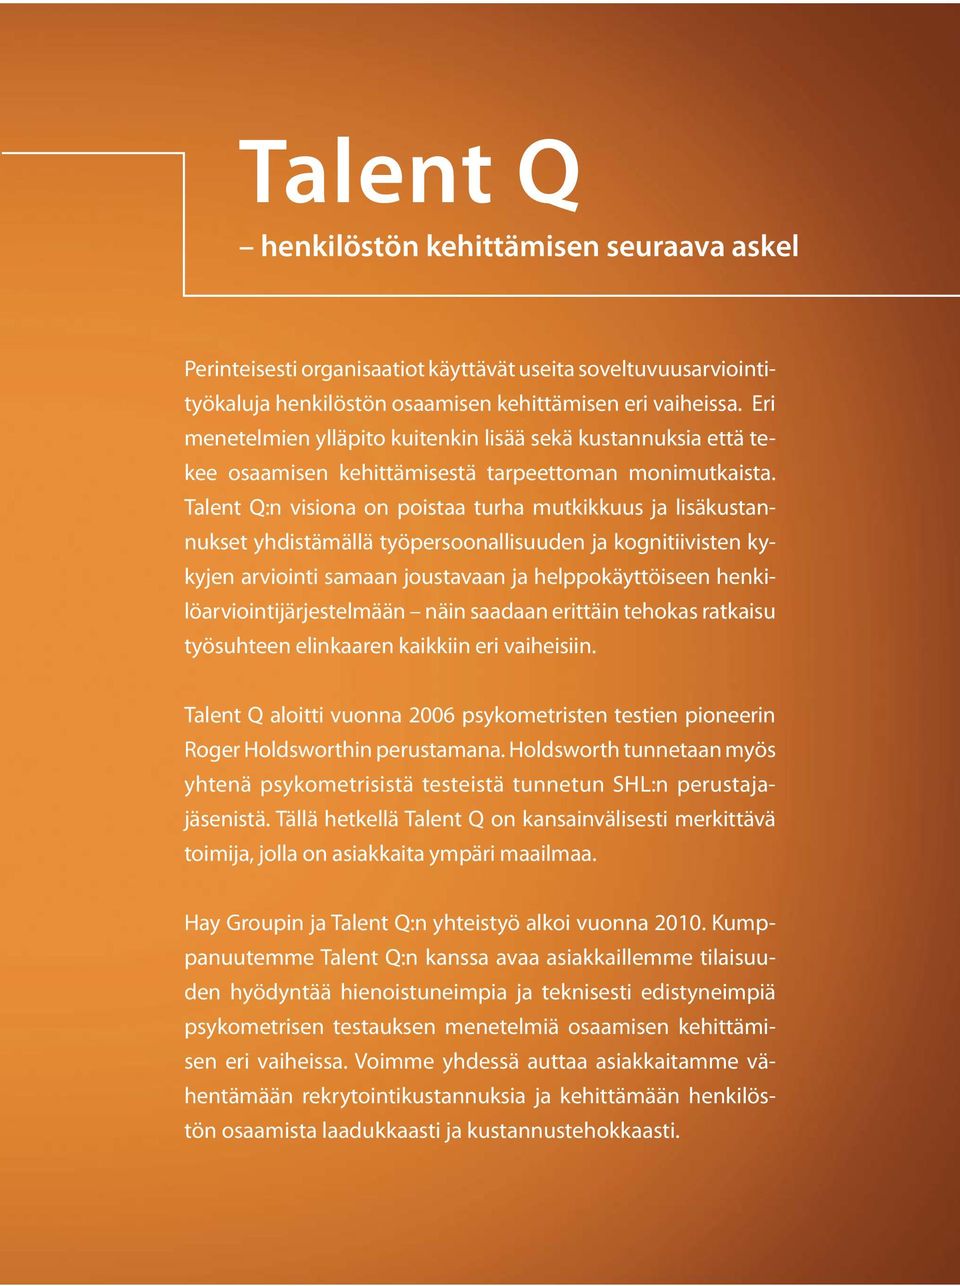 Talent Q:n visiona on poistaa turha mutkikkuus ja lisäkustannukset yhdistämällä työpersoonallisuuden ja kognitiivisten kykyjen arviointi samaan joustavaan ja helppokäyttöiseen